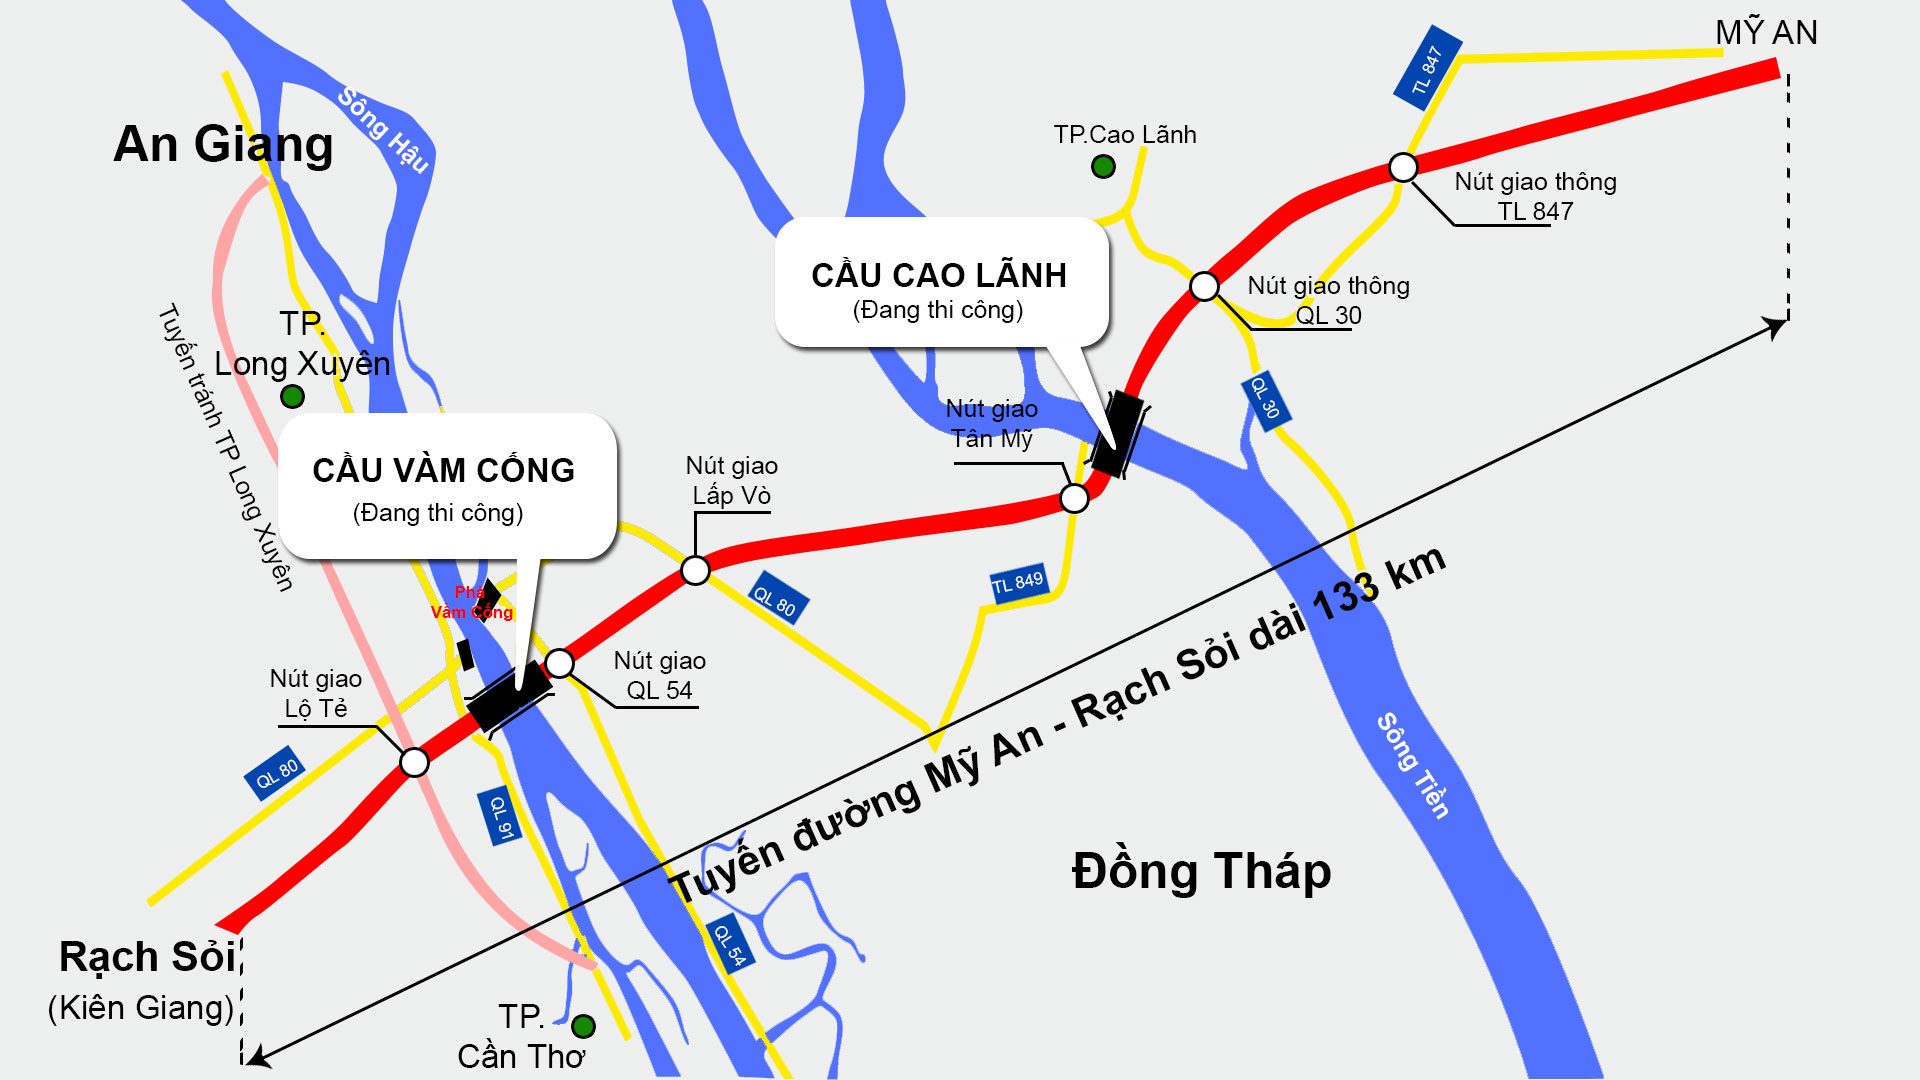 Tuyến cao tốc Bắc-Nam phía Tây: Tuyến cao tốc Bắc-Nam phía Tây là thành tựu lớn của sector giao thông Việt Nam. Đường cao tốc đem lại sự kết nối nhanh chóng giữa các địa phương, góp phần thắt chặt tình đoàn kết và phát triển kinh tế. Hãy đón xem hình ảnh tuyến cao tốc này để cảm nhận sự tiến bộ của đất nước.